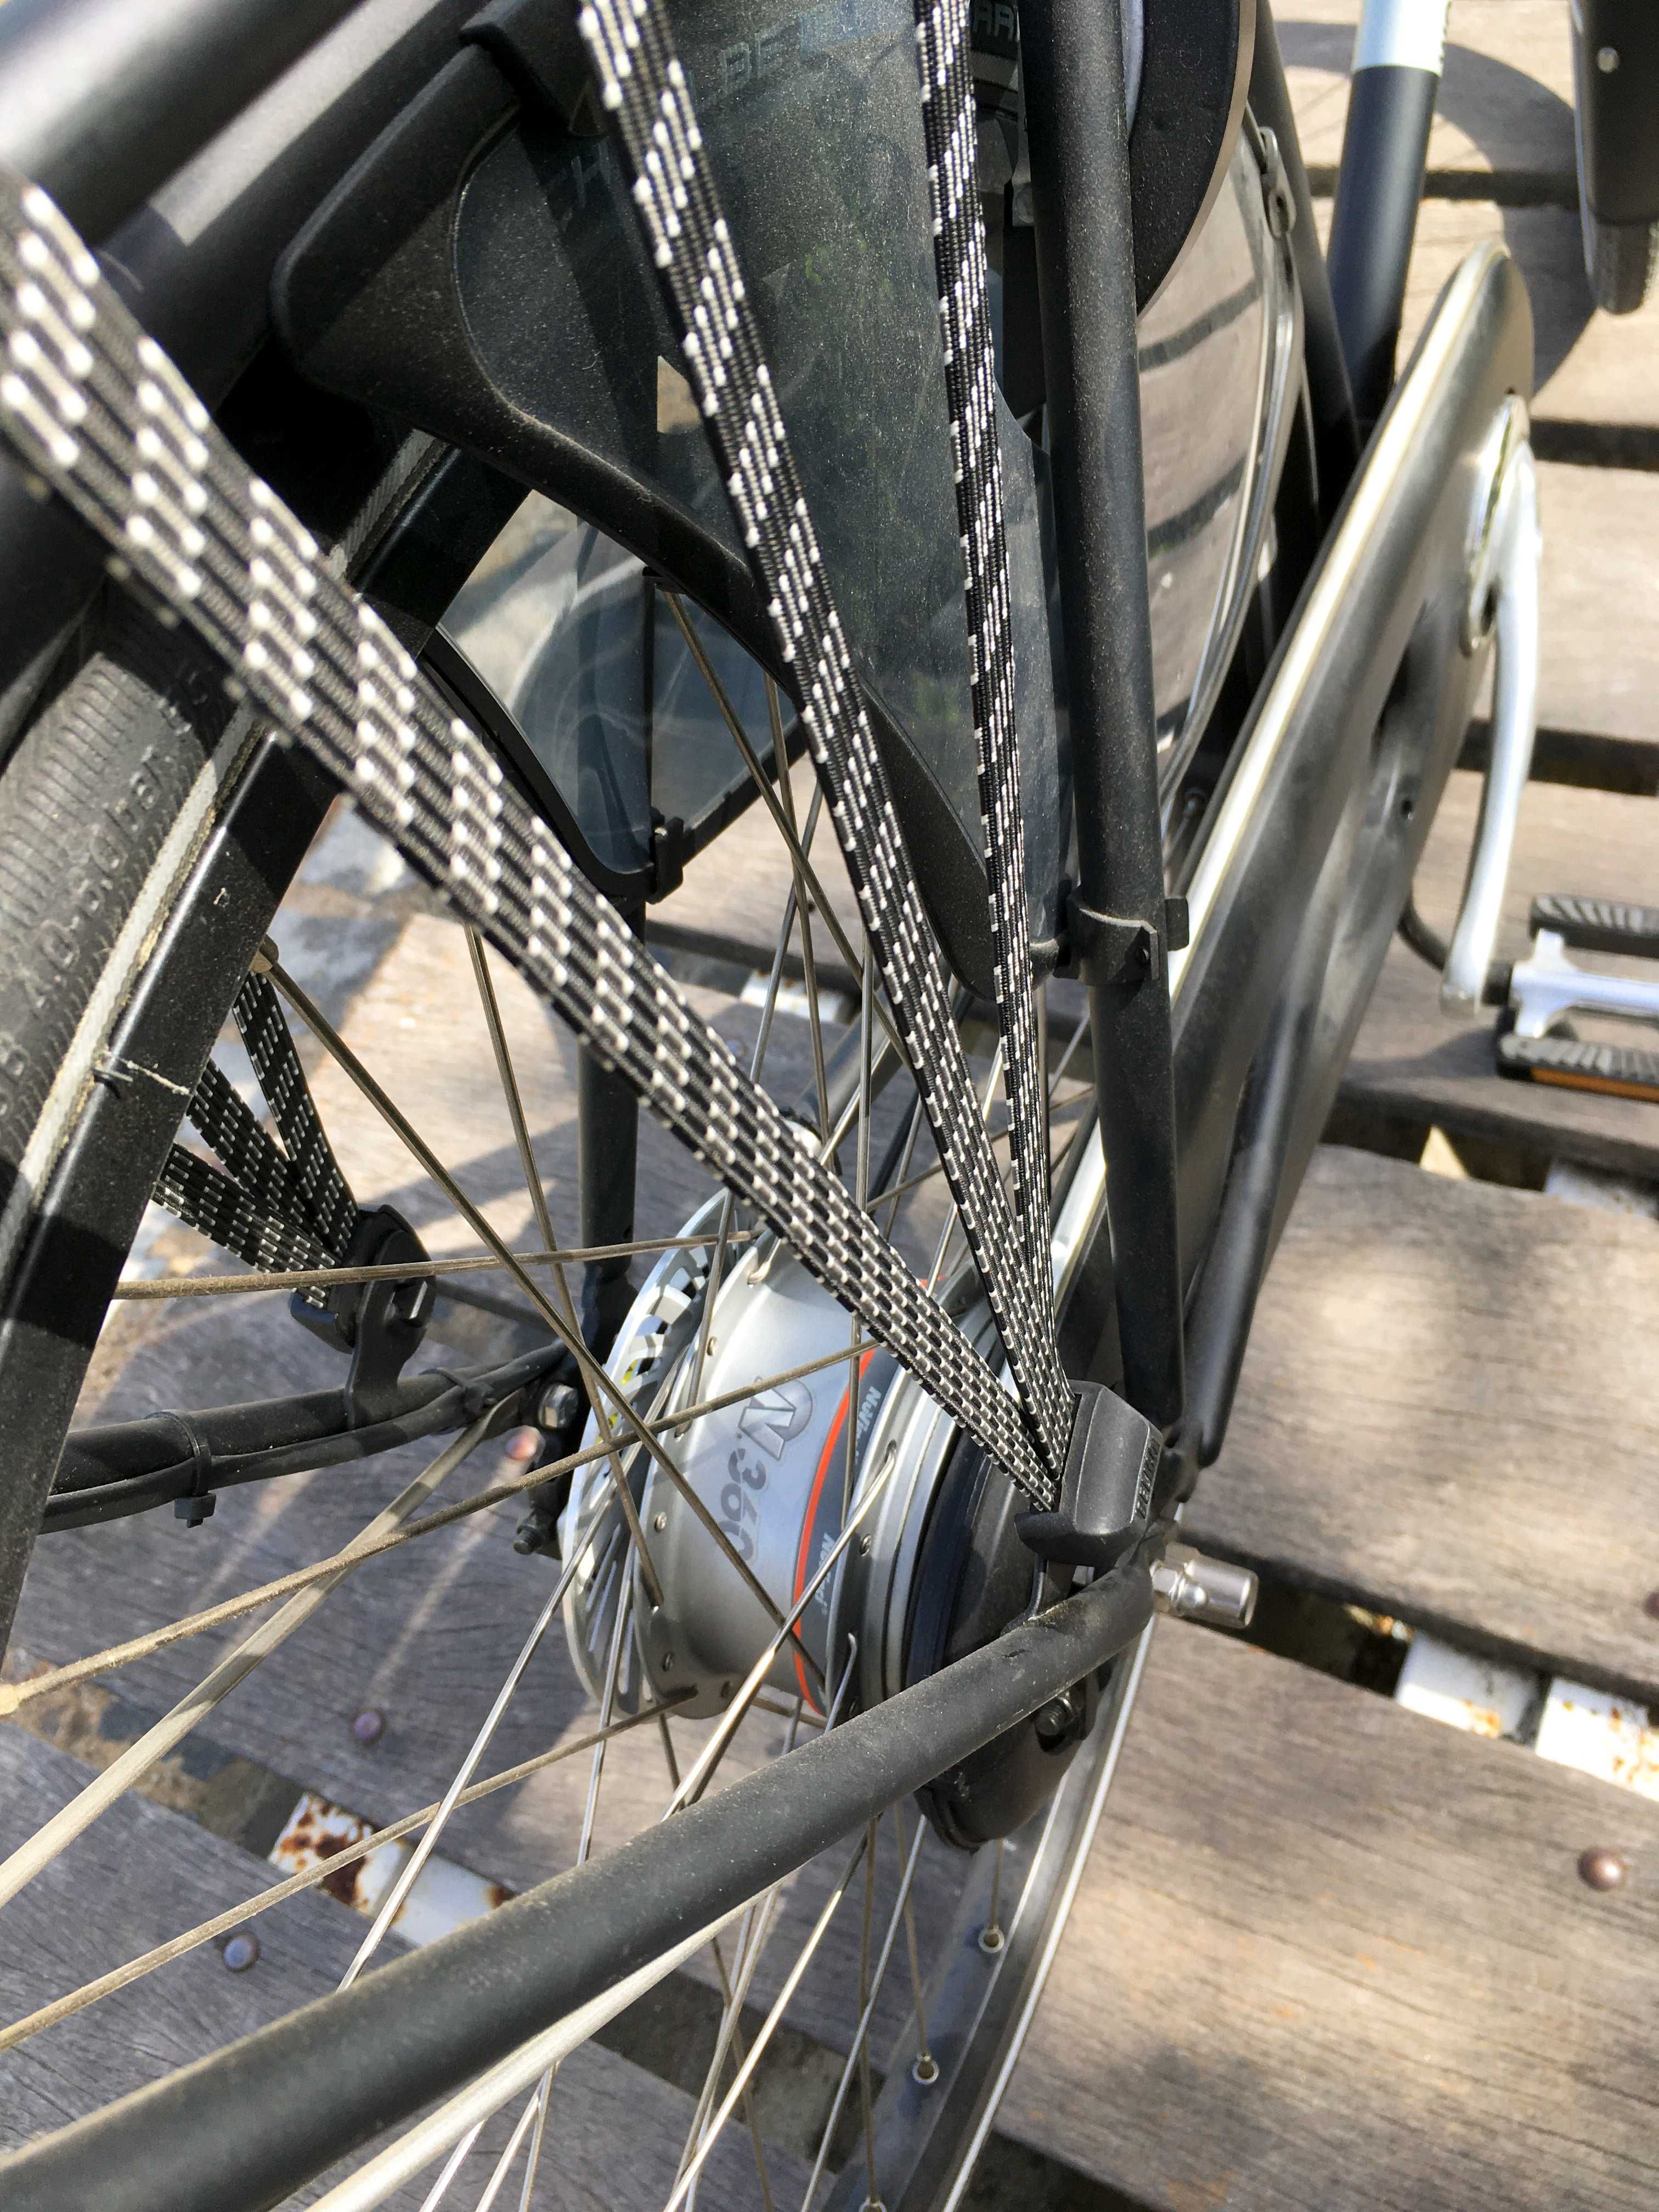 Bicicleta holandesa, WORKCYCLES, quadro alto